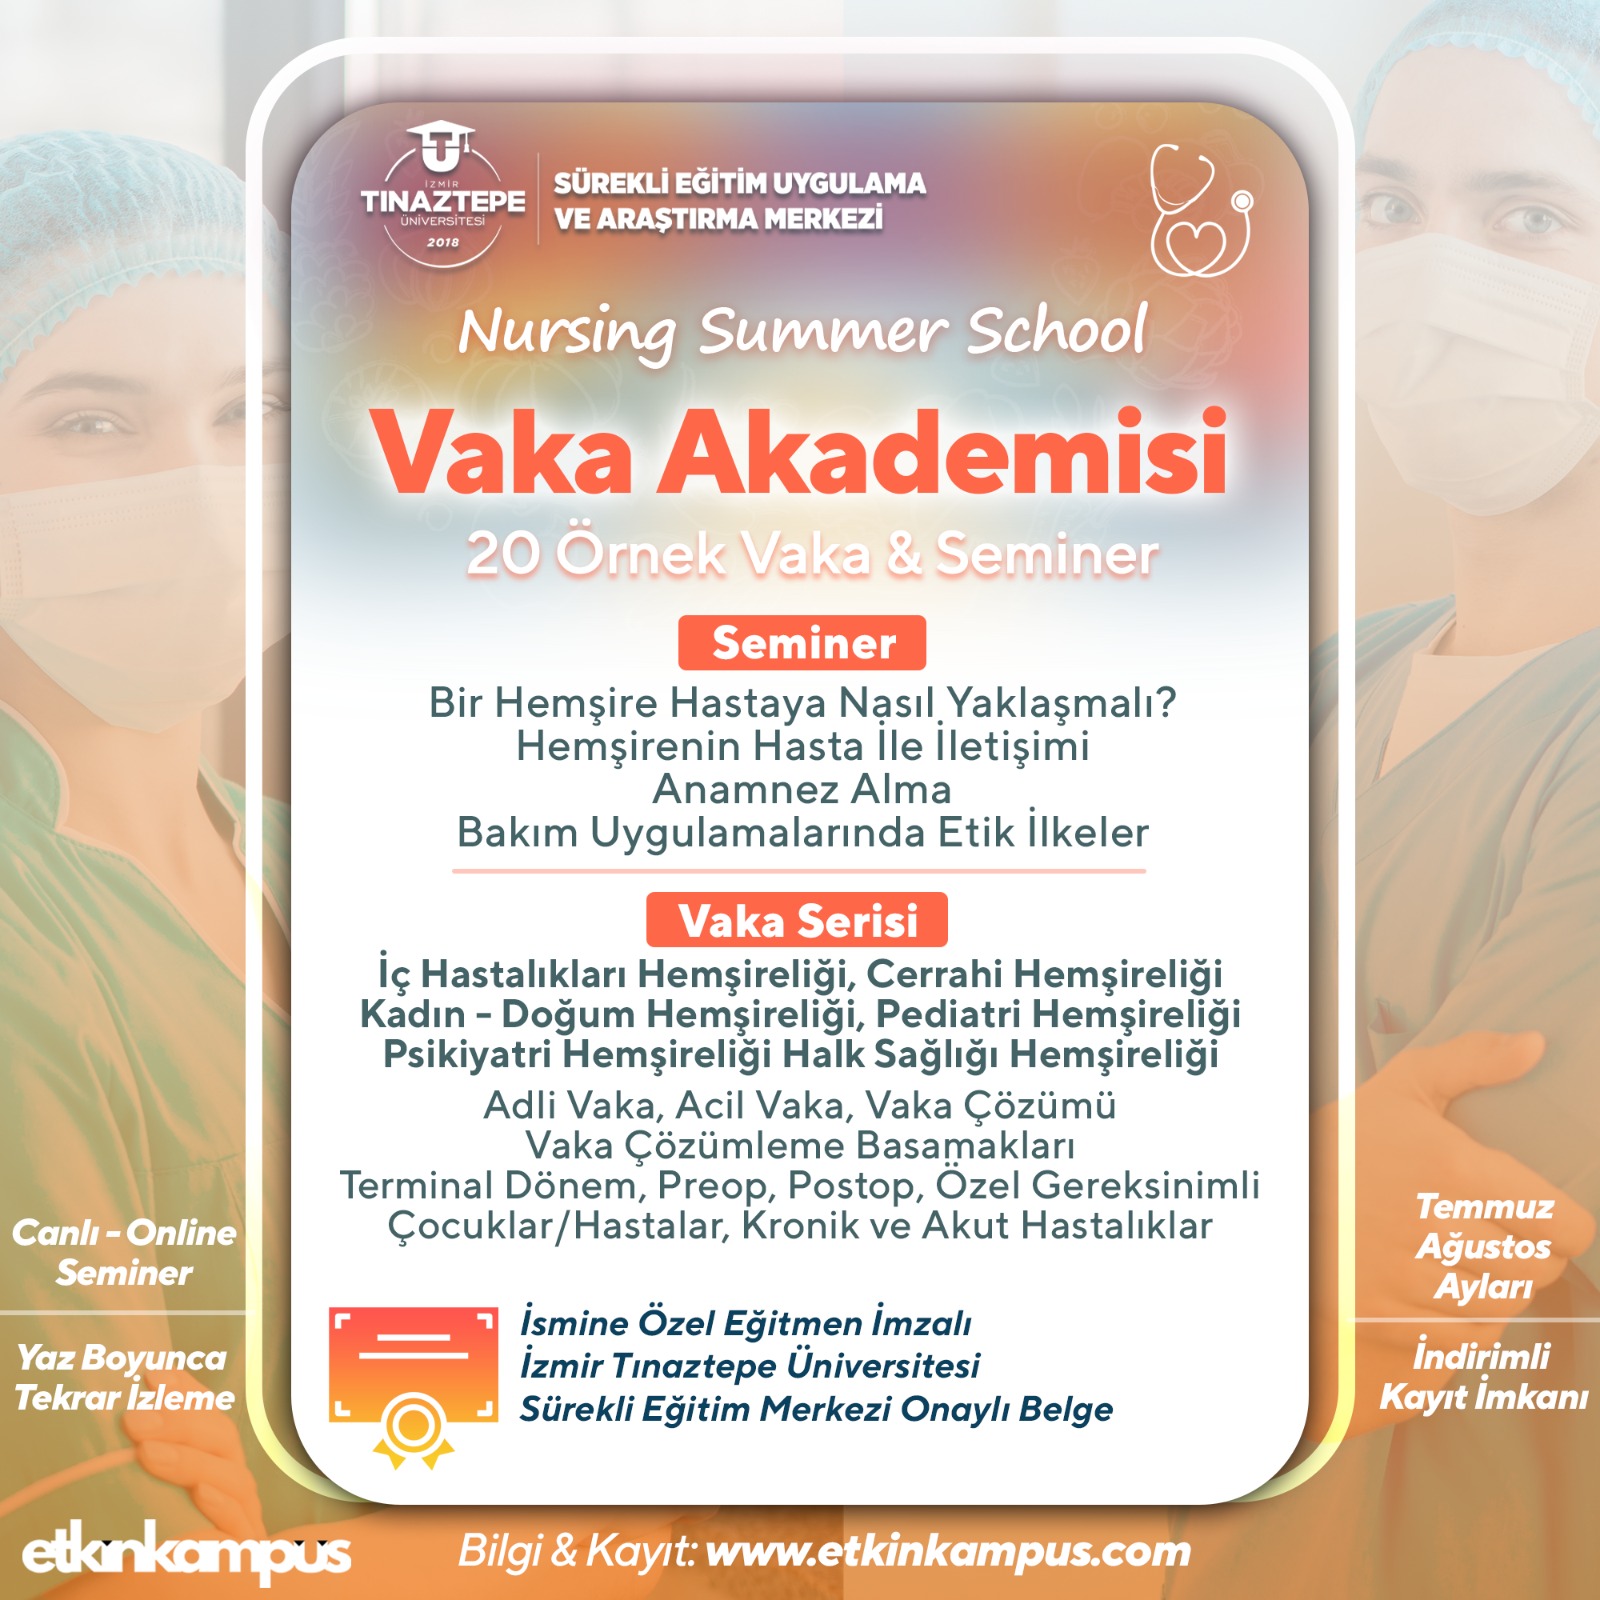 Nursing Summer School: Vaka Akademisi